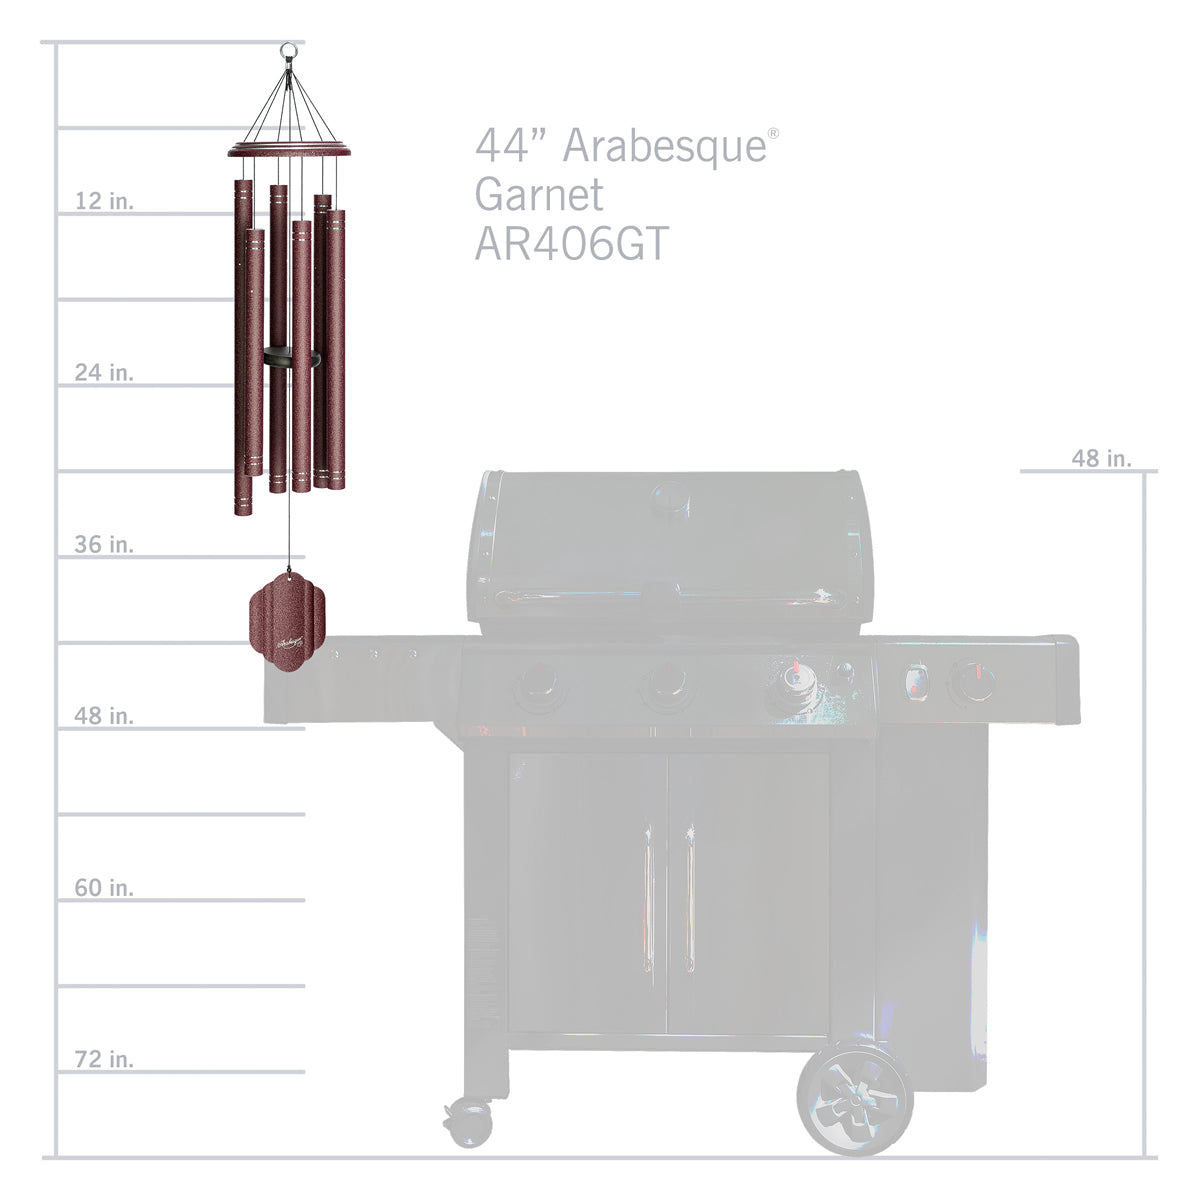 Arabesque 44-inch Wind Chime - Garnet